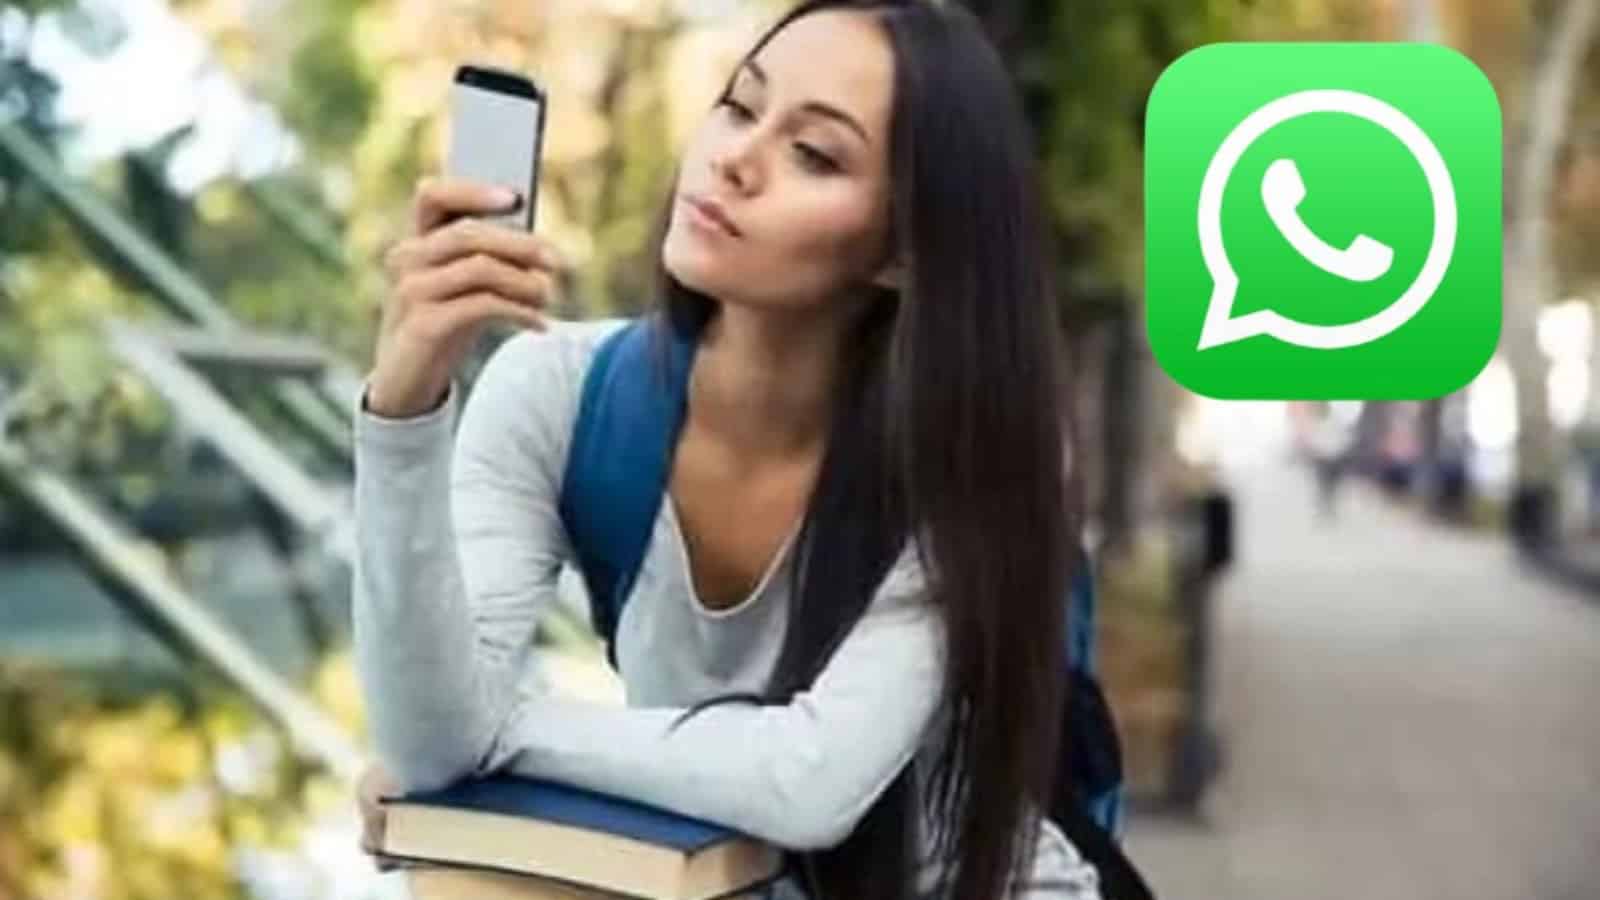 WhatsApp, aggiornamento: arriva la funzione che SEMPLIFICA la vita